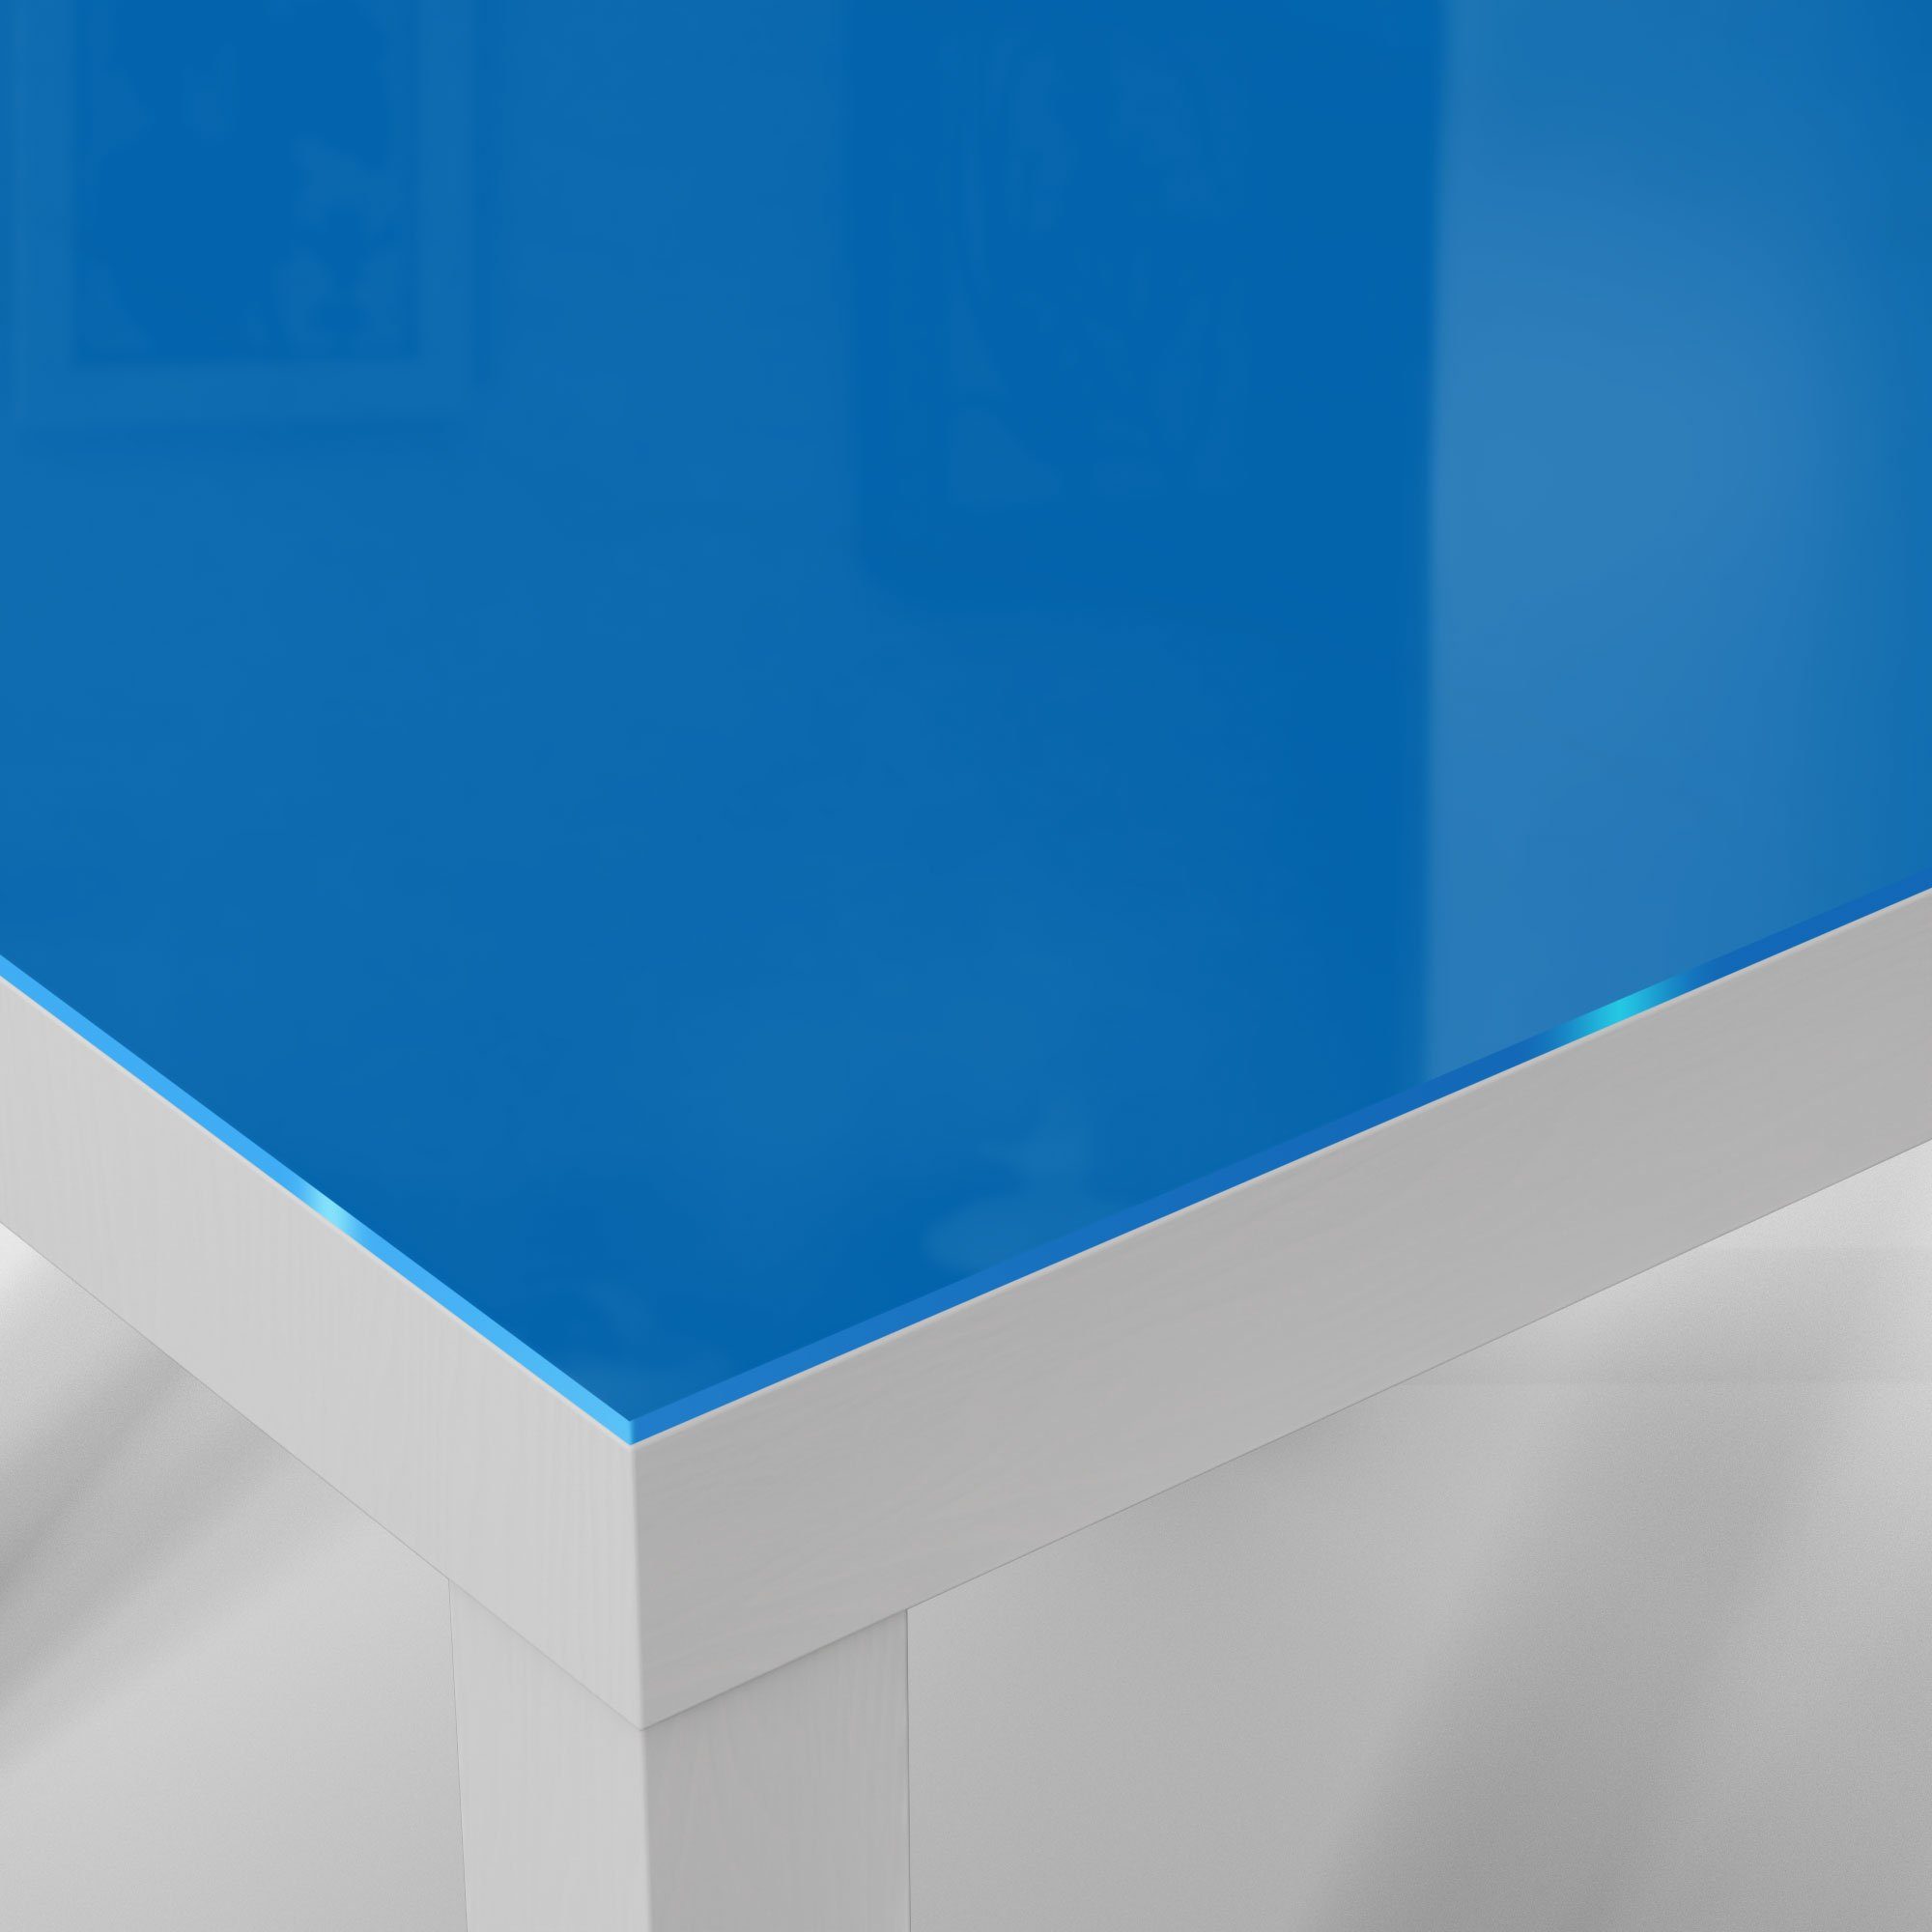 DEQORI Glas Beistelltisch Glastisch - Weiß Mittelblau', 'Unifarben modern Couchtisch